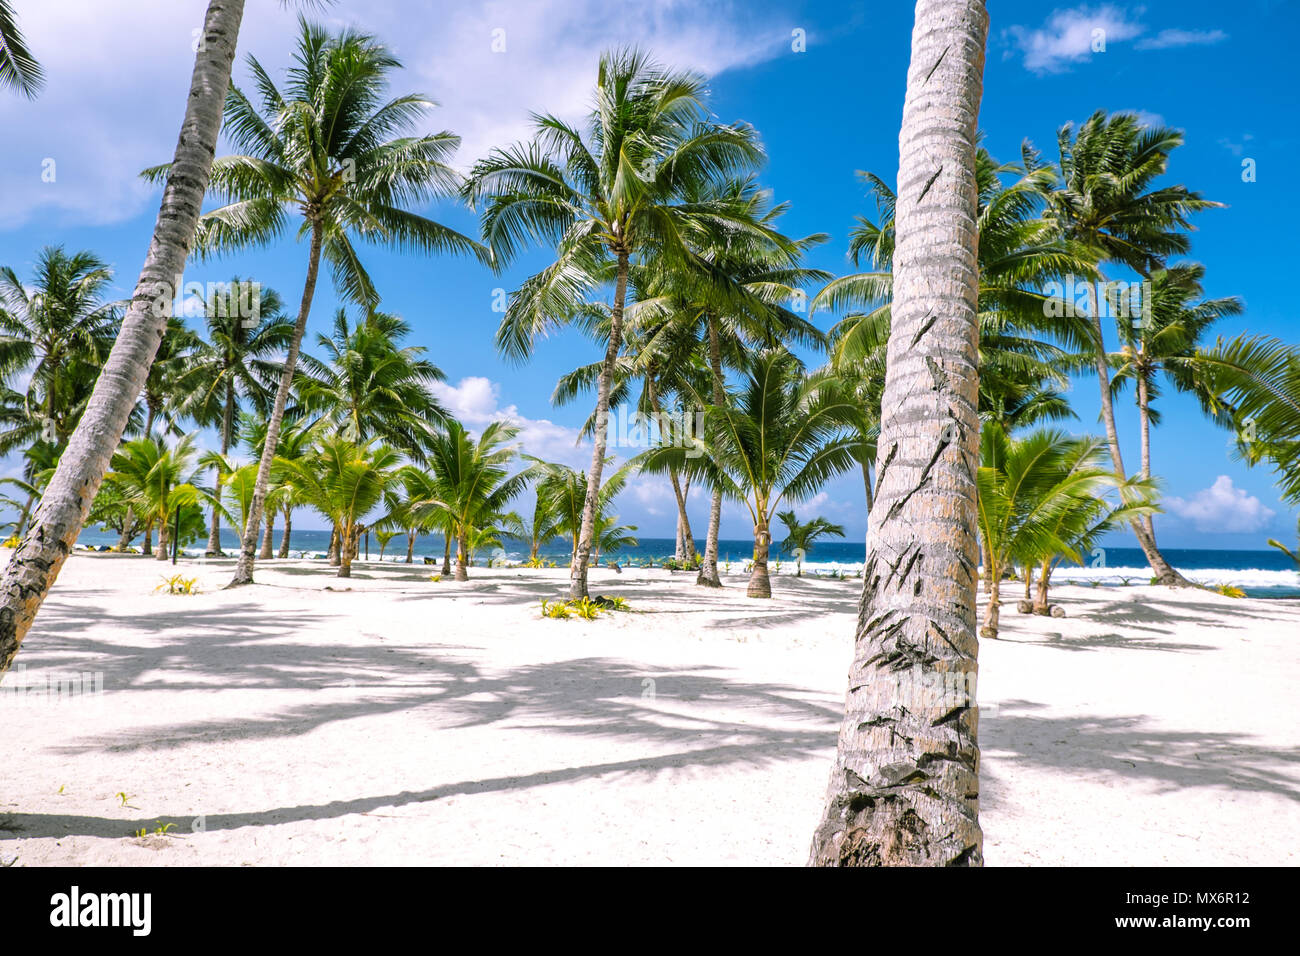 Guardando attraverso alberi di palma tropicali su una spiaggia di sabbia bianca in una giornata di sole verso l'Oceano Pacifico del Sud. Fotografato nell'isola di Upolu, Samoa occidentali. Foto Stock